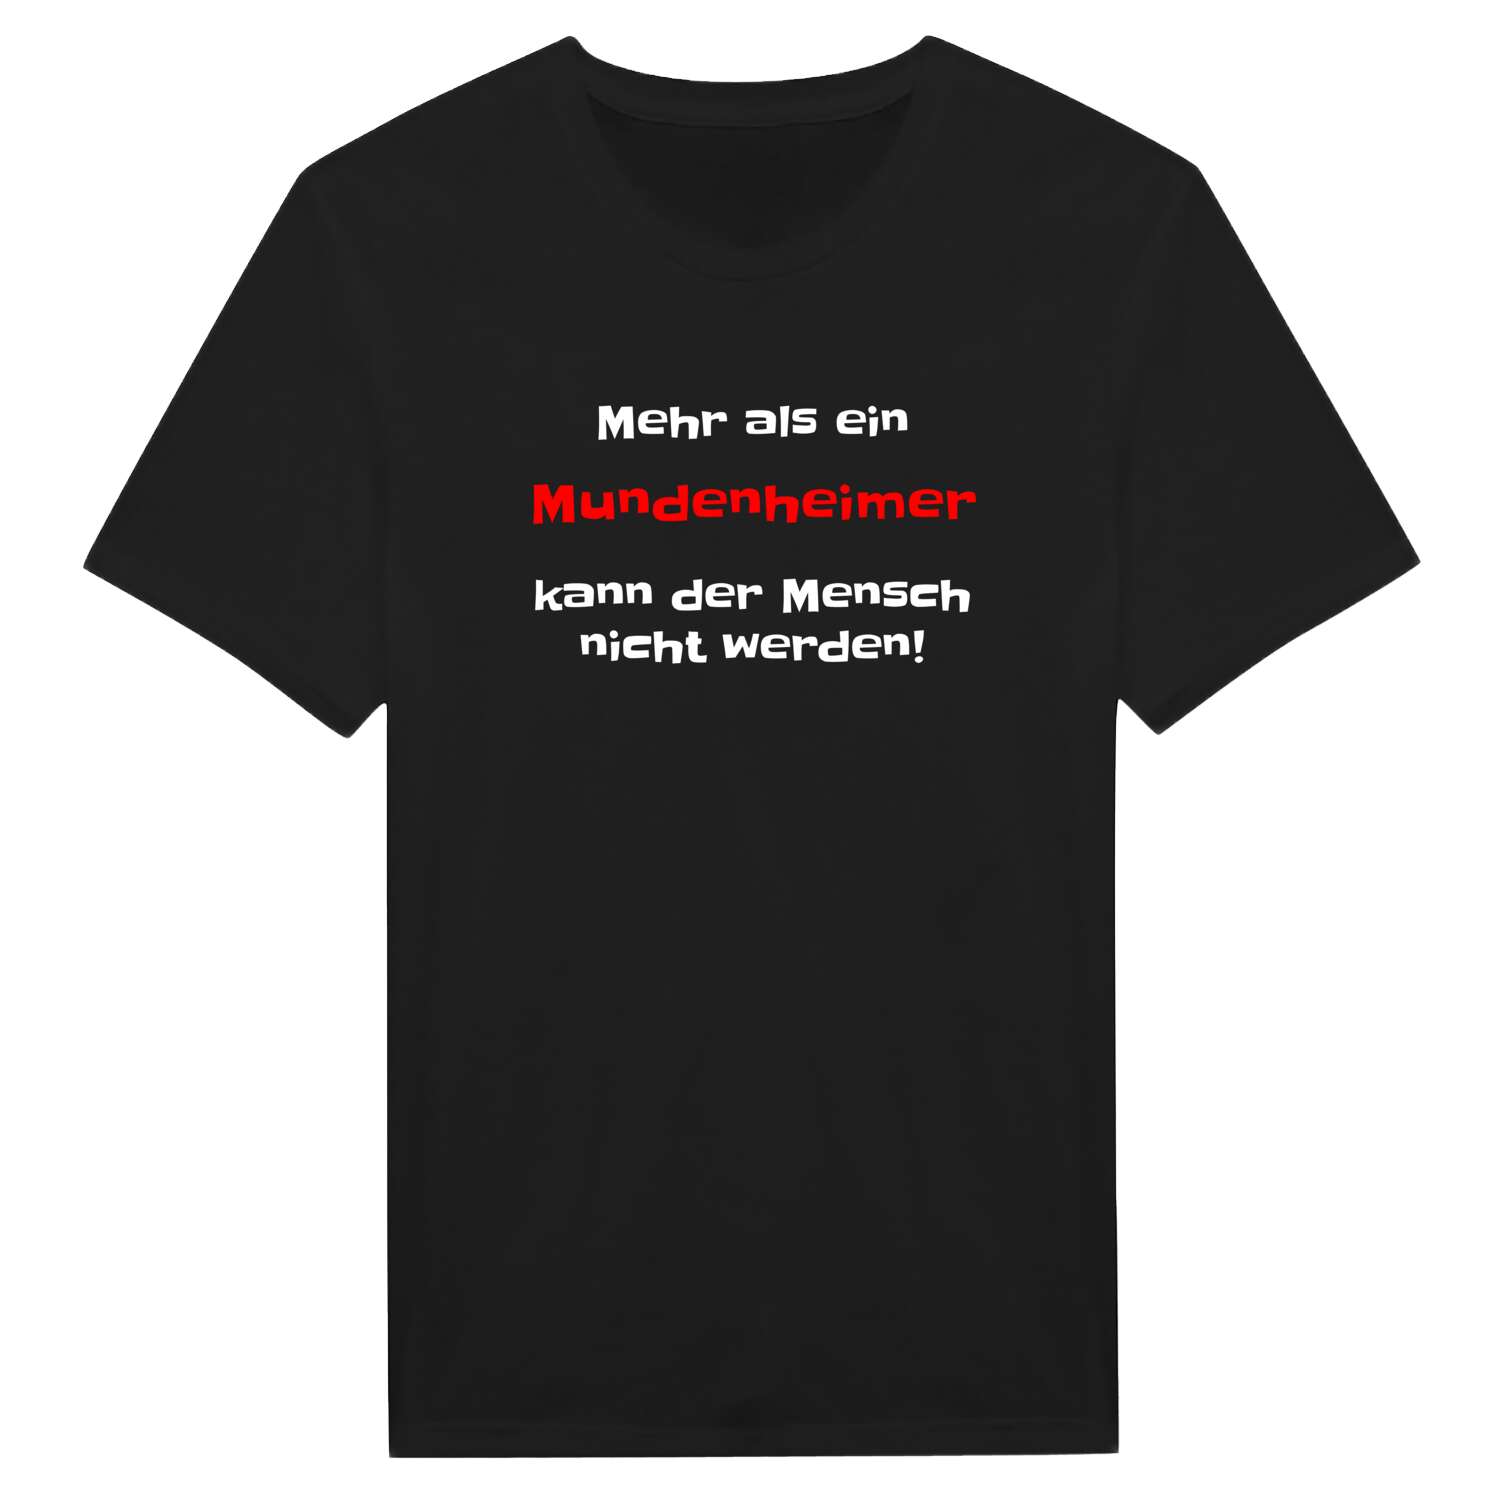 Mundenheim T-Shirt »Mehr als ein«